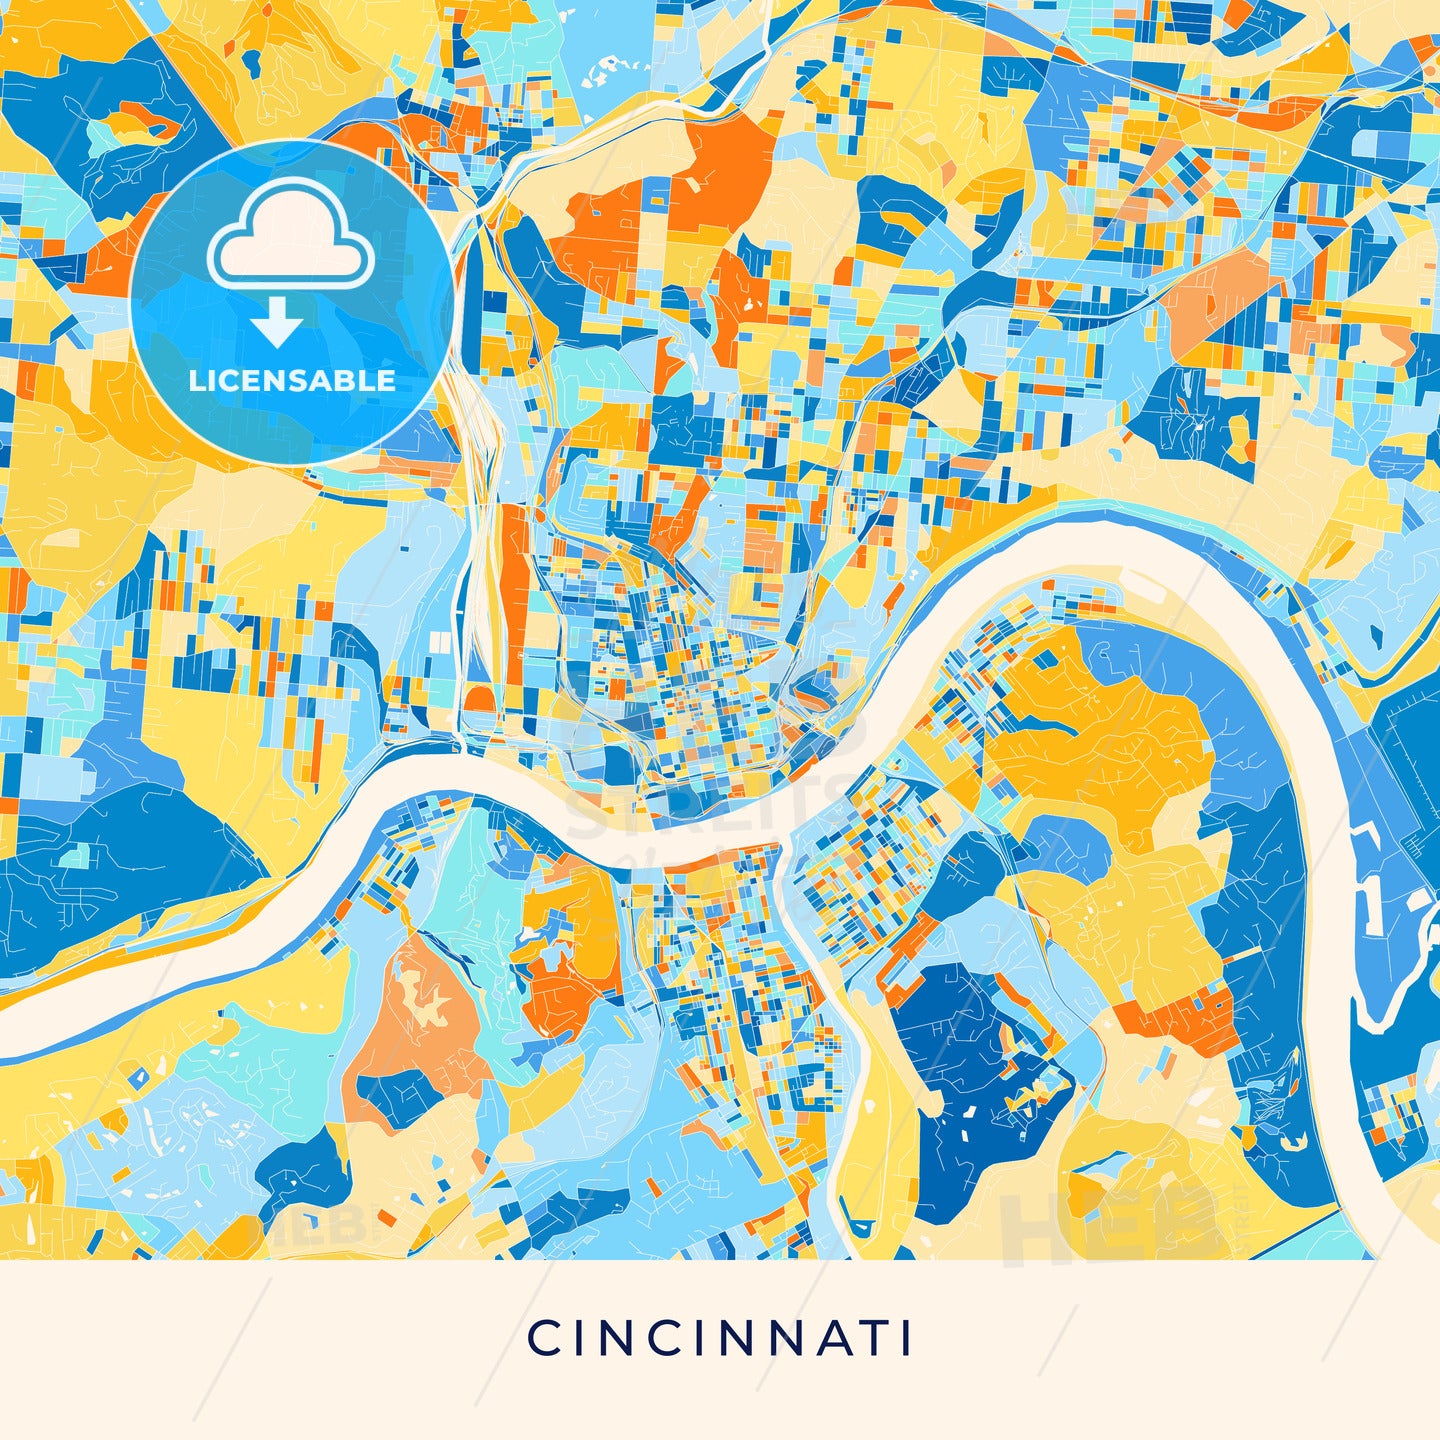 Cincinnati colorful map poster template